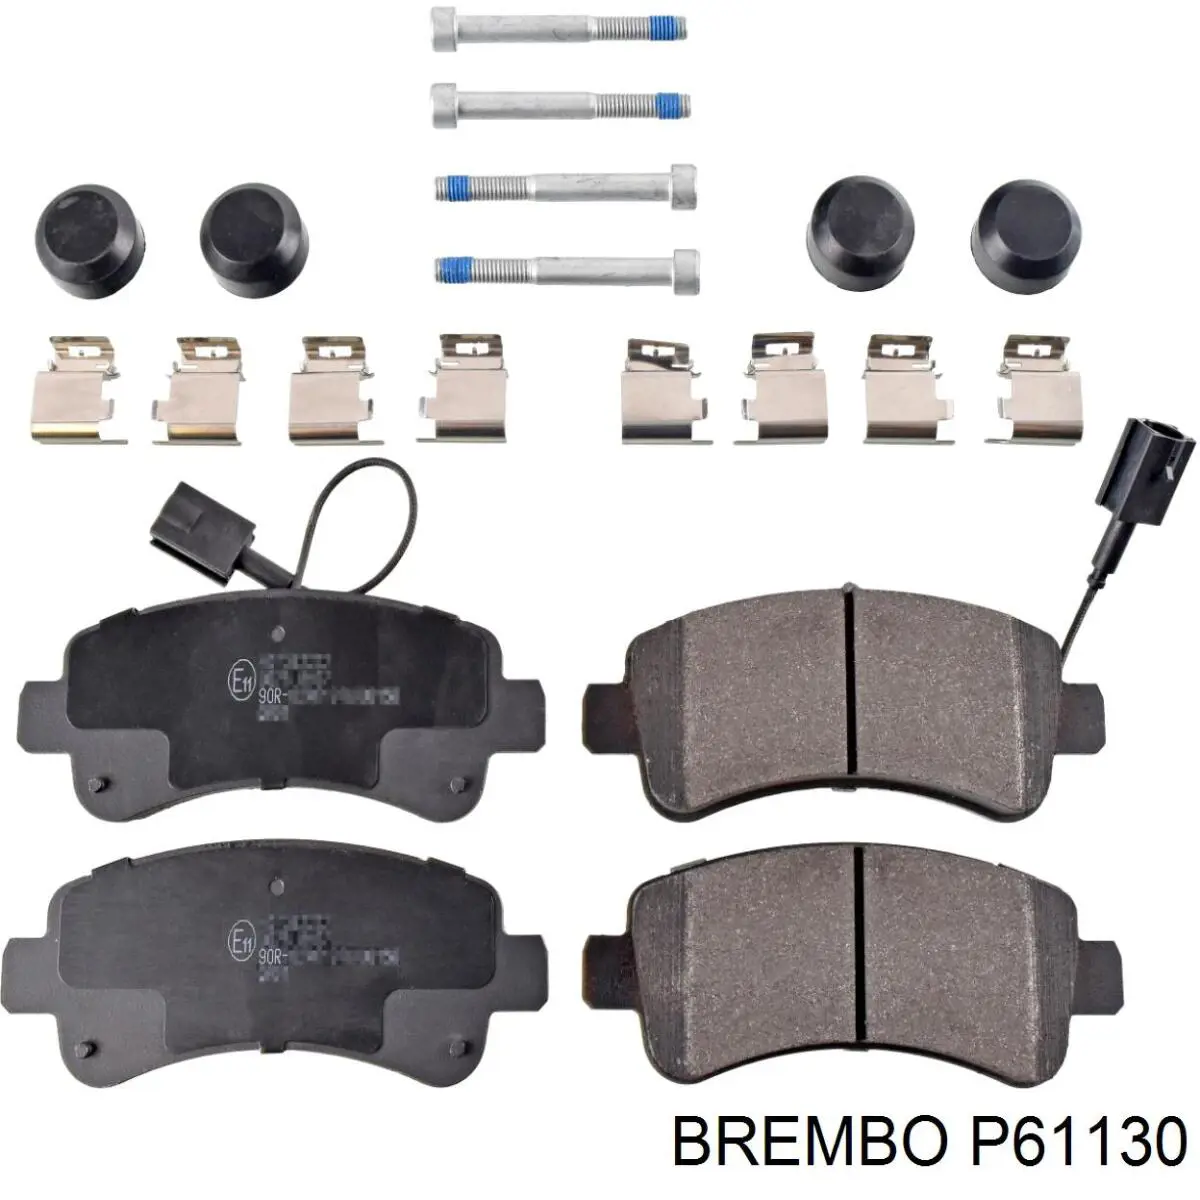 P61130 Brembo колодки тормозные задние дисковые